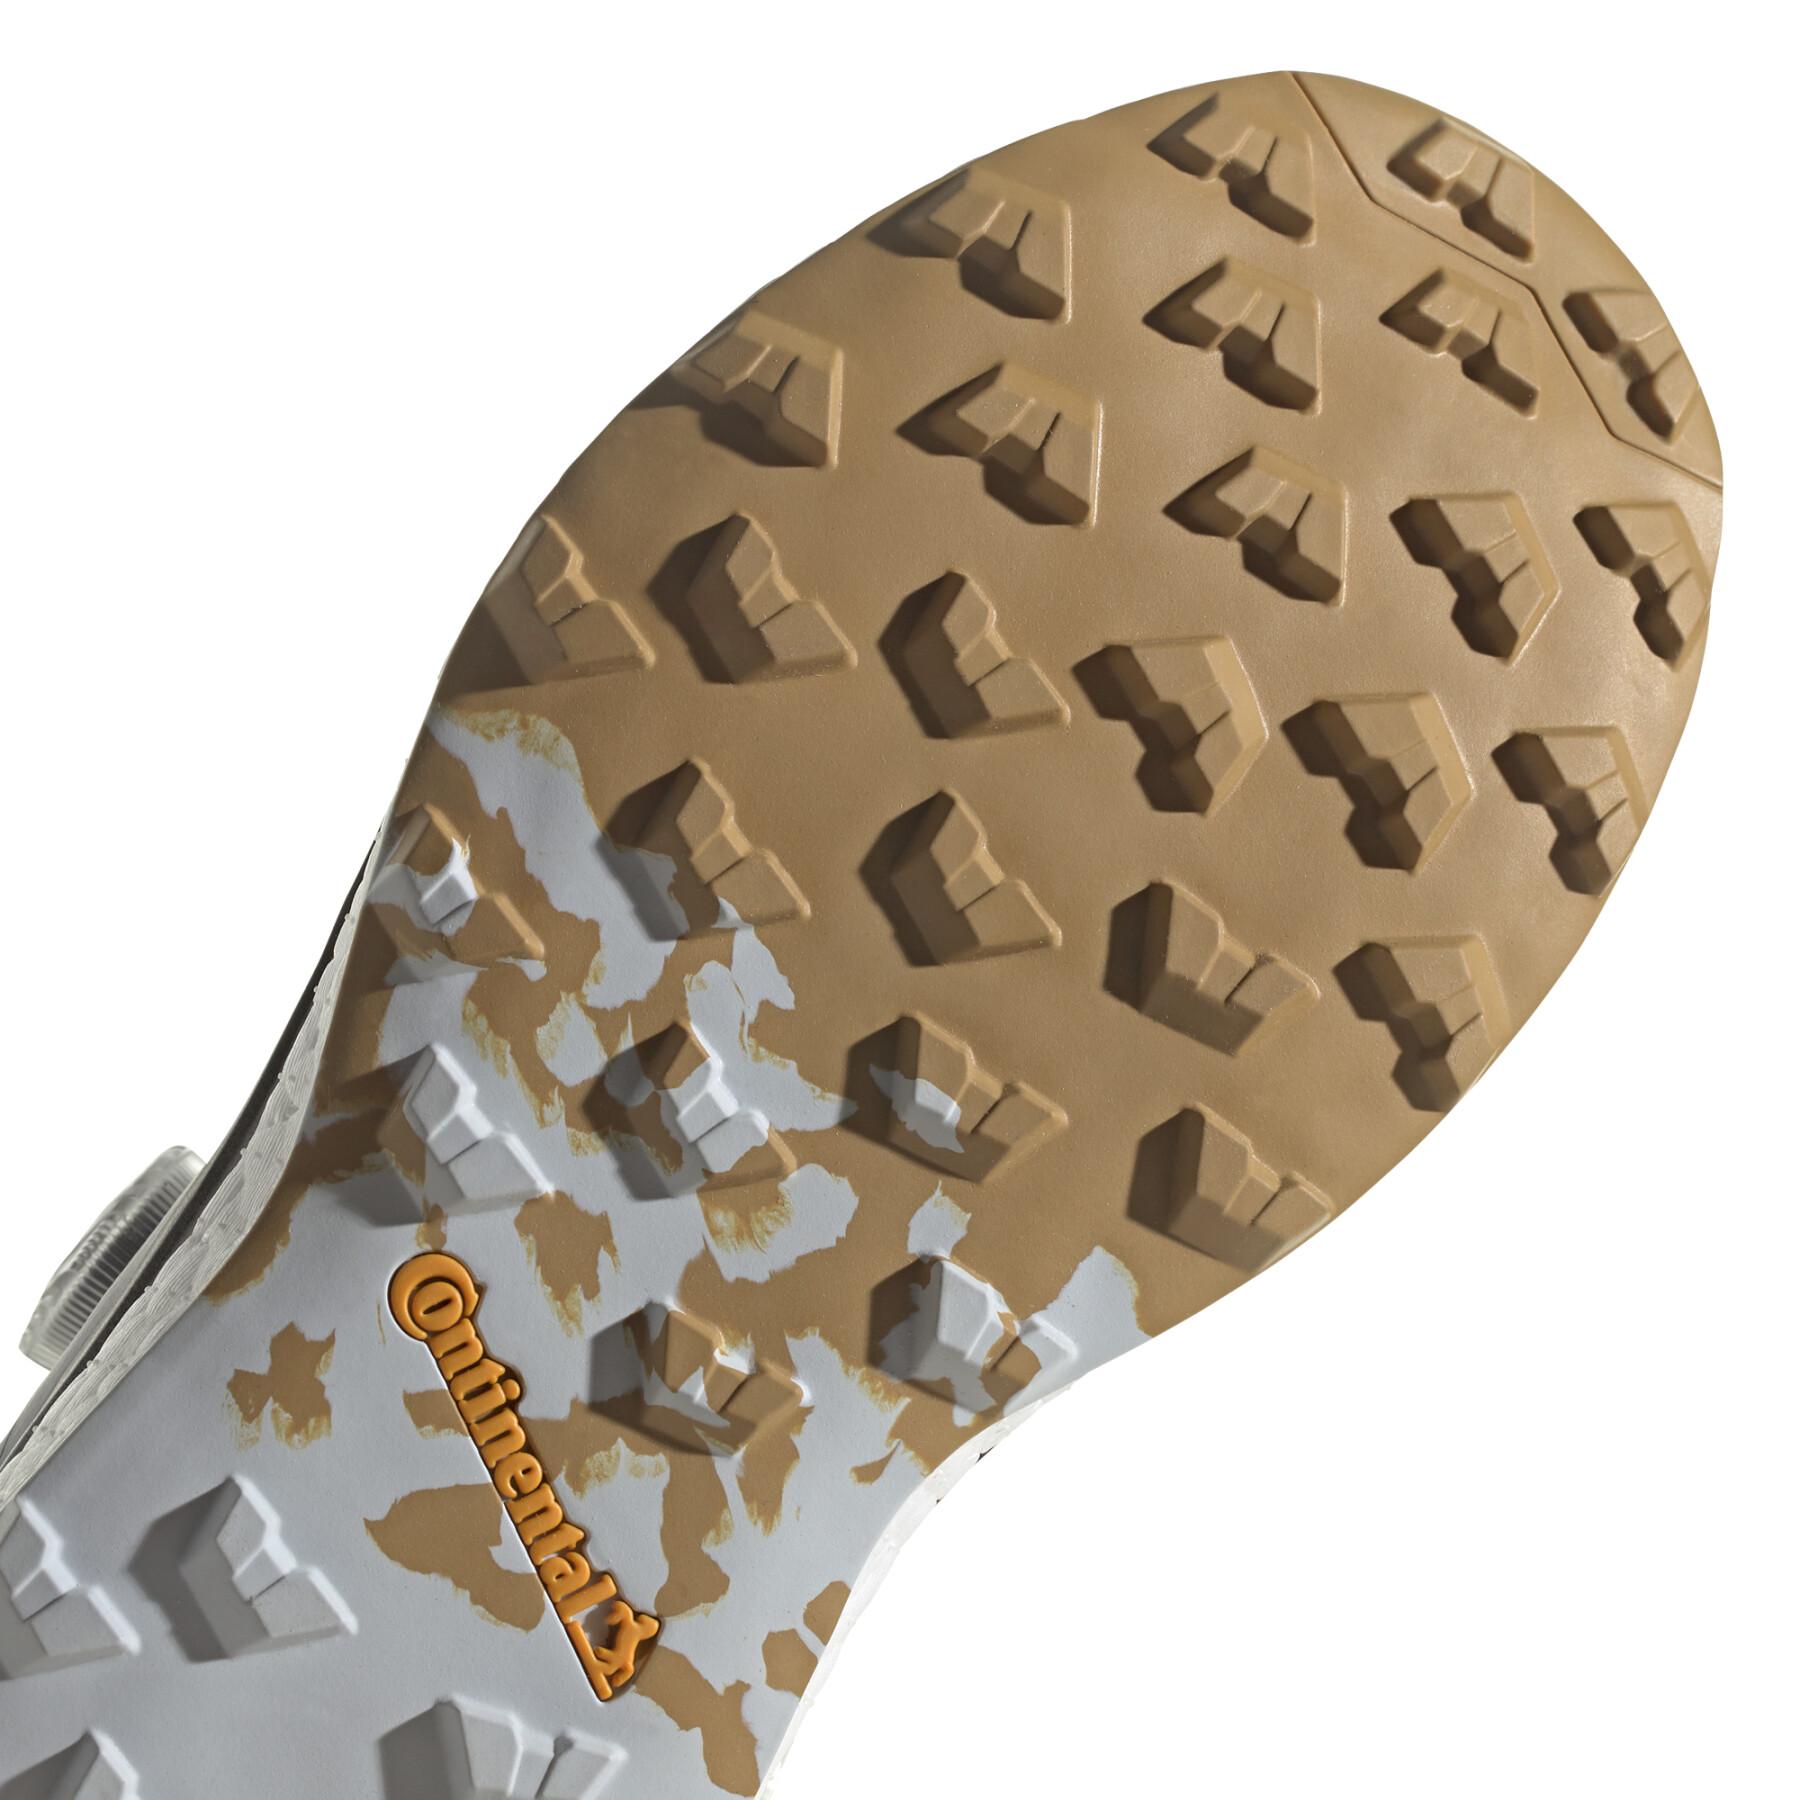 Trail-Schuhe adidas Terrex Agravic Tech Pro